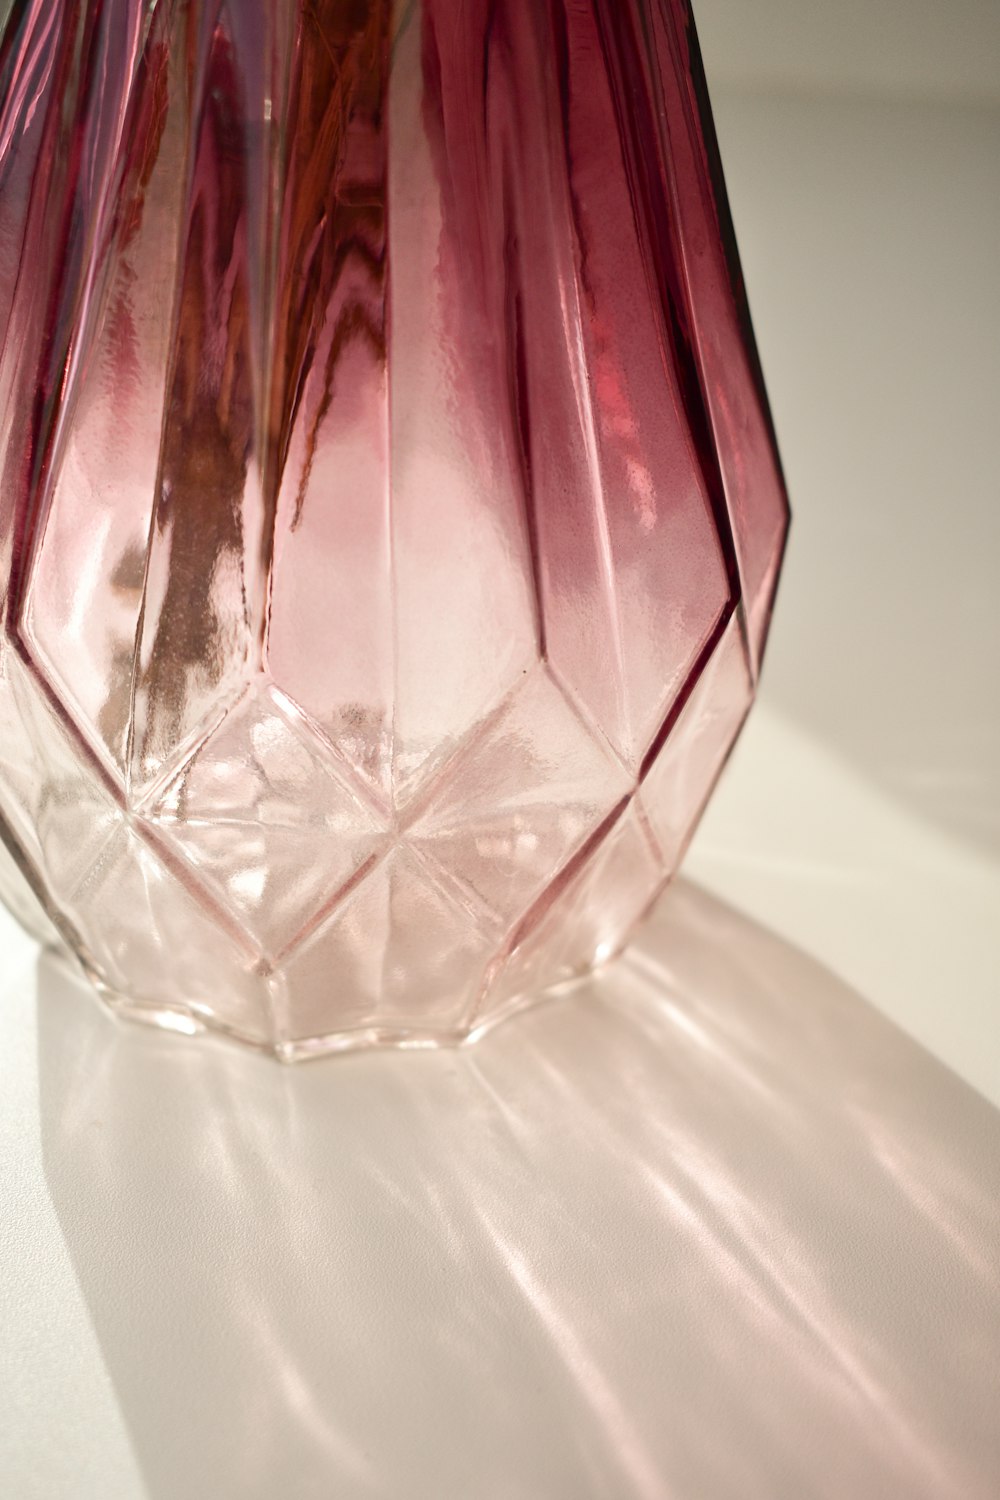 Recipiente de vidrio transparente sobre mesa blanca